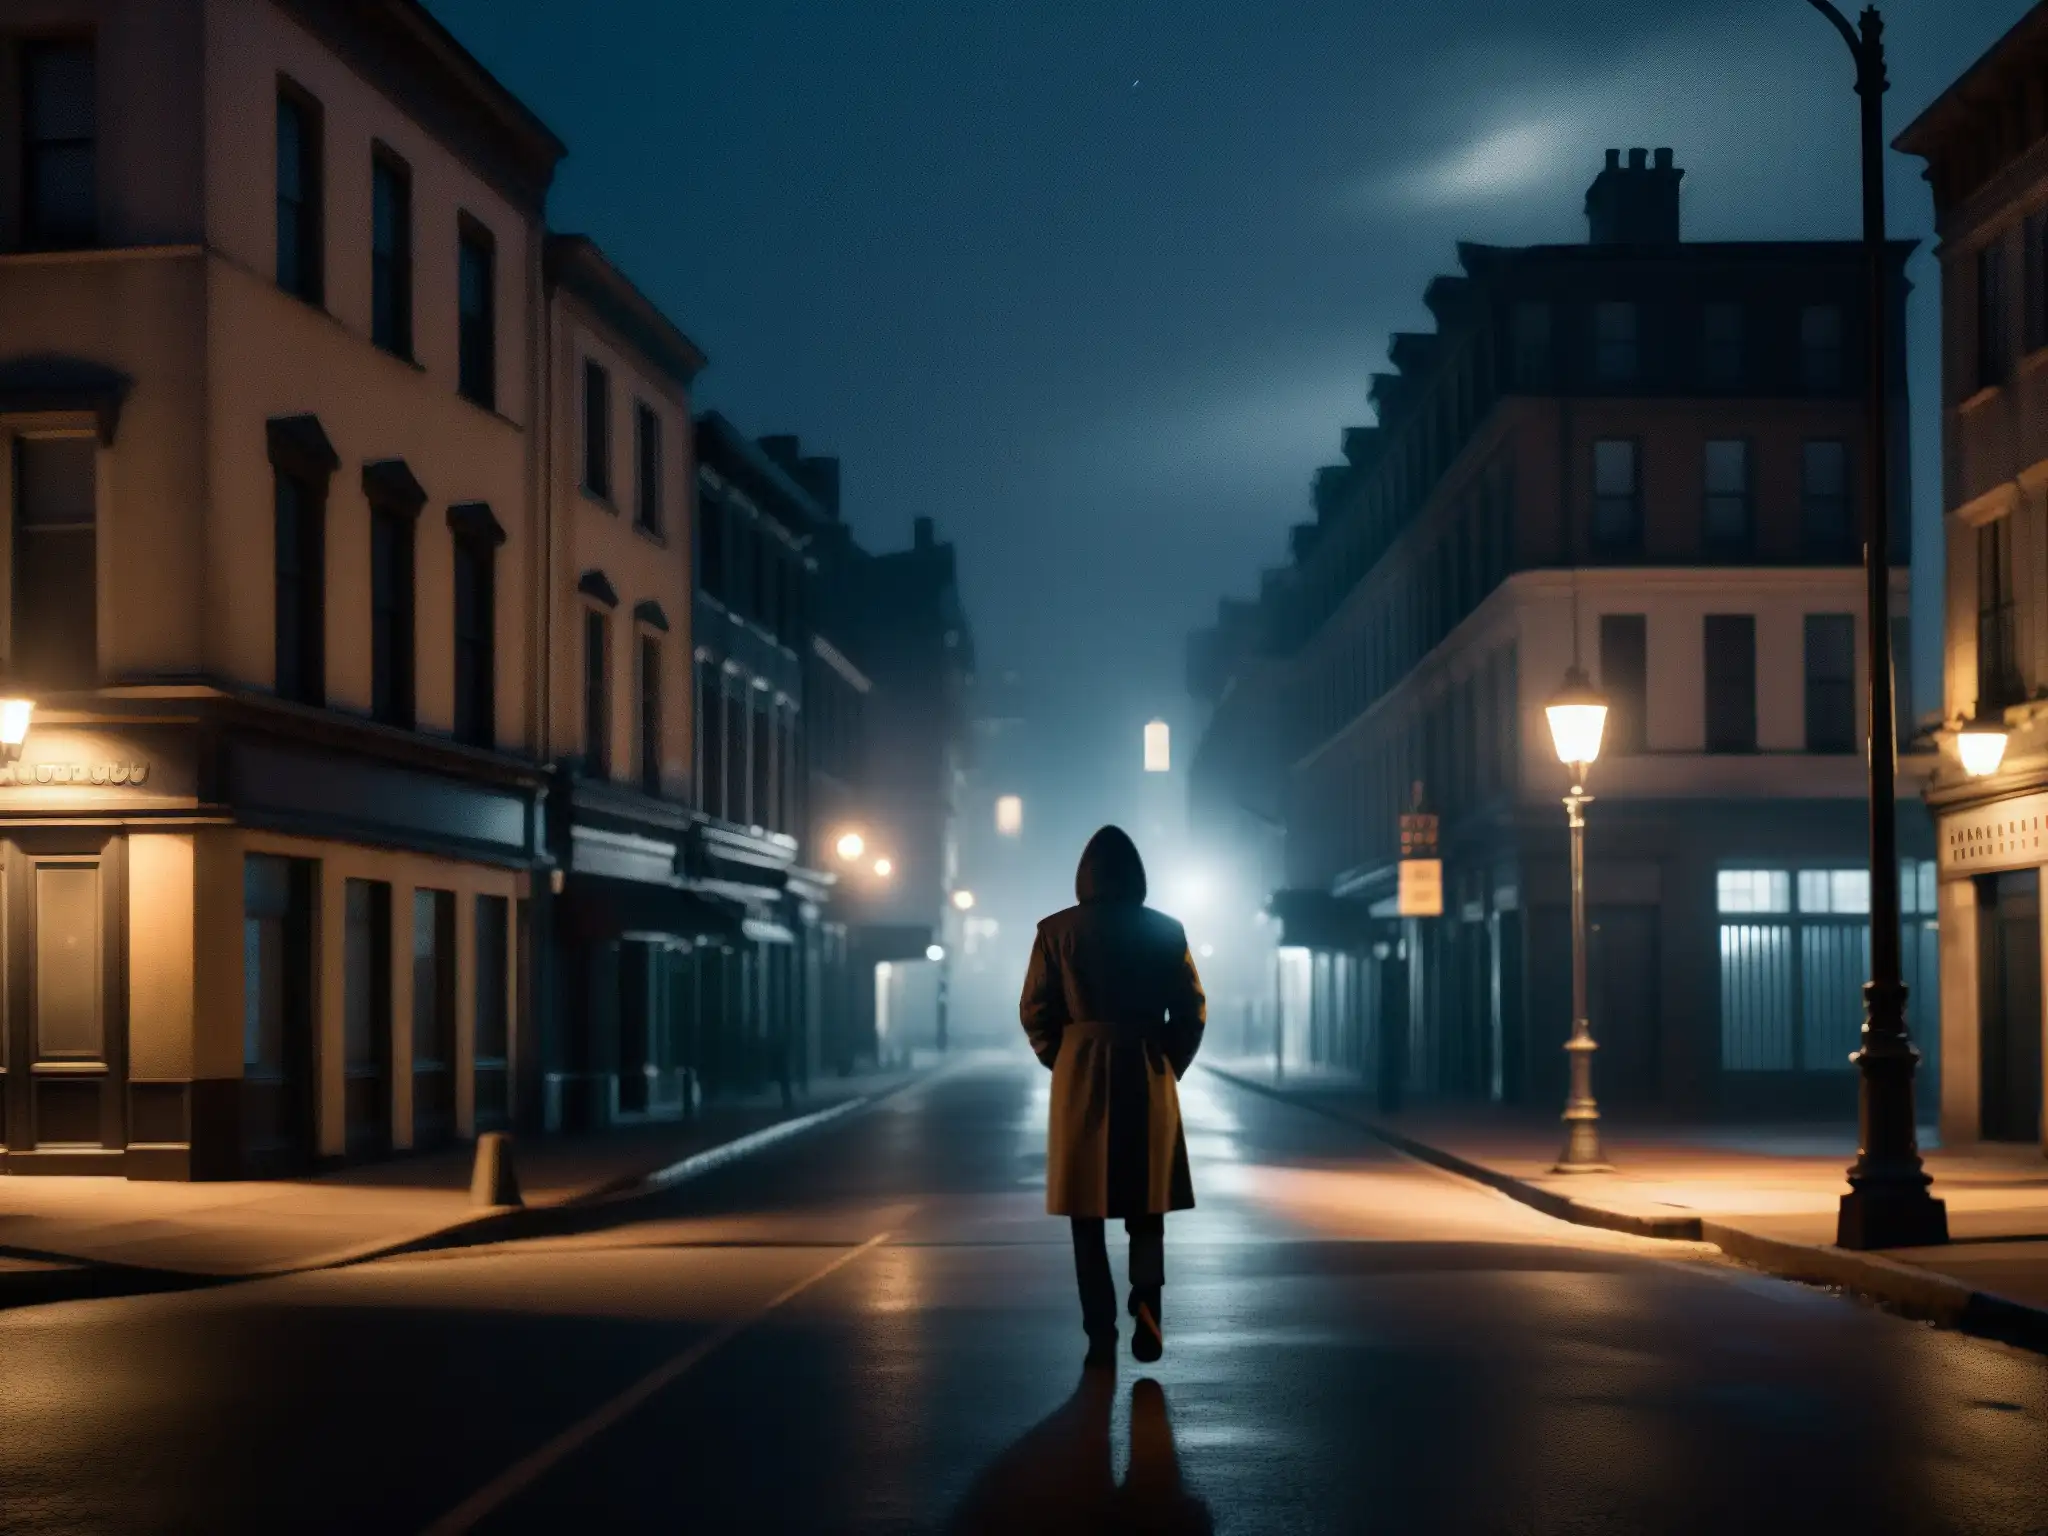 Bajo la luz tenue de la ciudad, una figura solitaria se encuentra bajo un farol parpadeante, extendiendo su mano en un pedido de auxilio